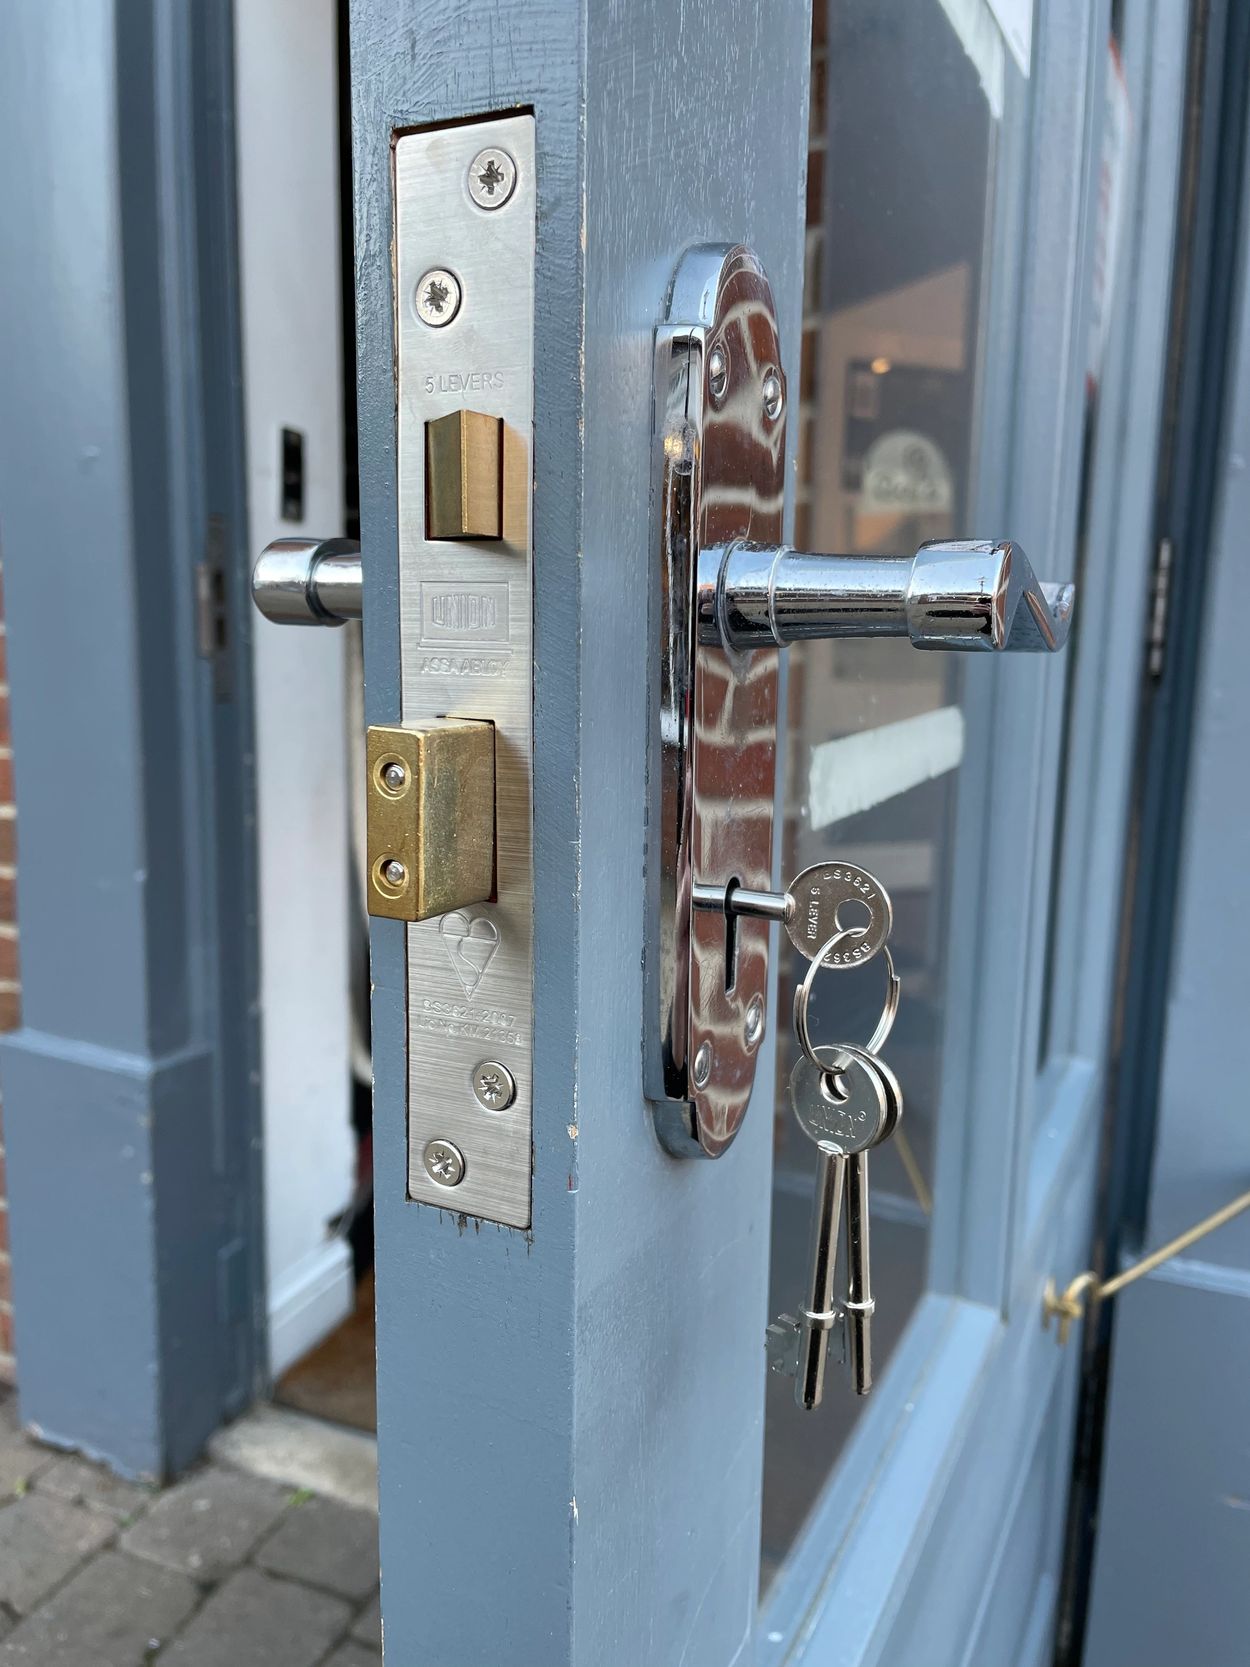 Lock replacement on a door